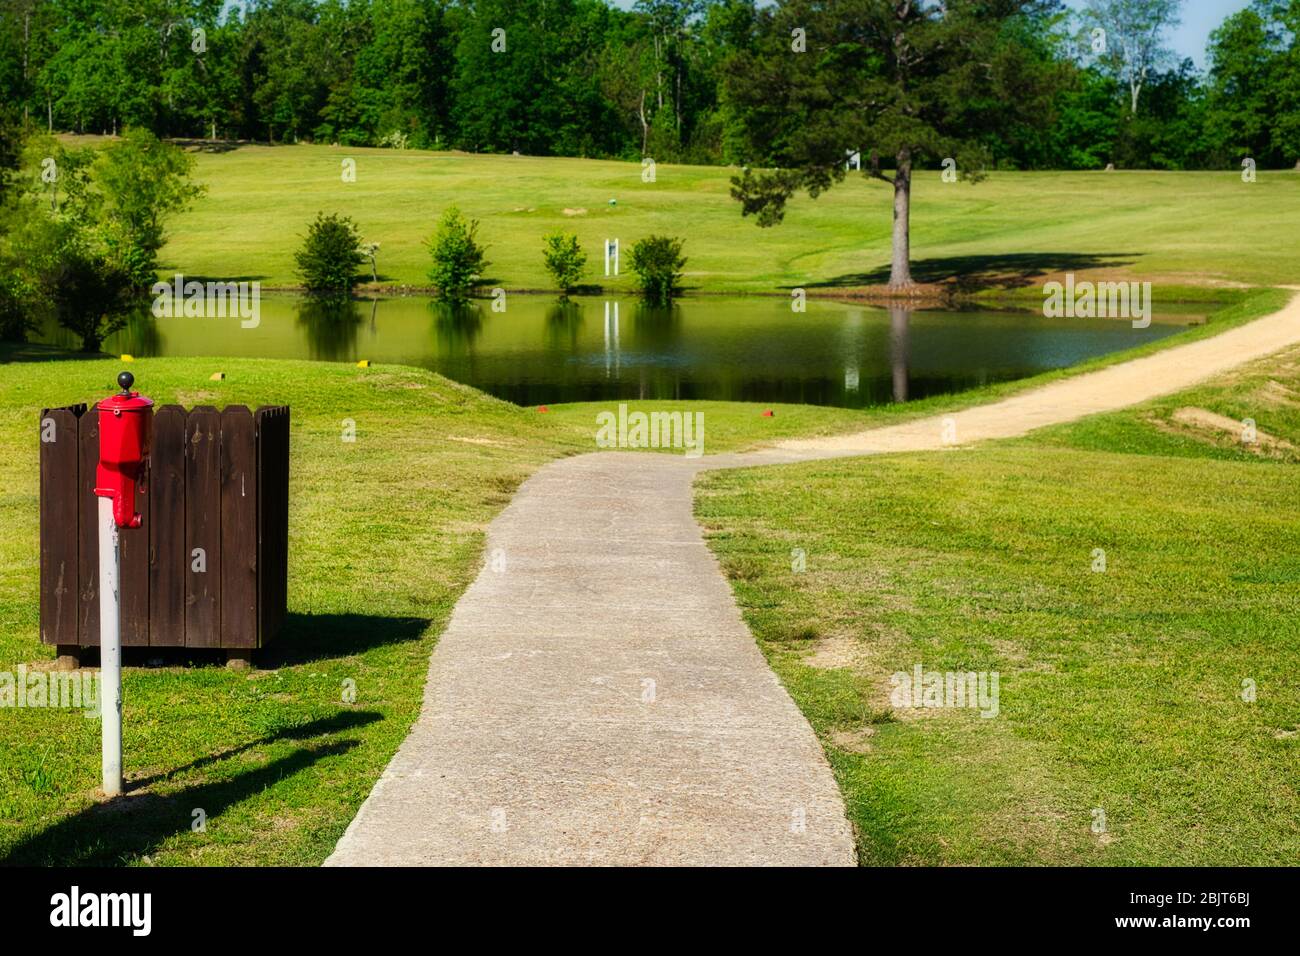 Le Oak Hill Country Club de Sulligent, Alabama, est ouvert et prêt à jouer. Le golf est un excellent moyen de sortir et de profiter du temps pendant cette pandémie. Banque D'Images